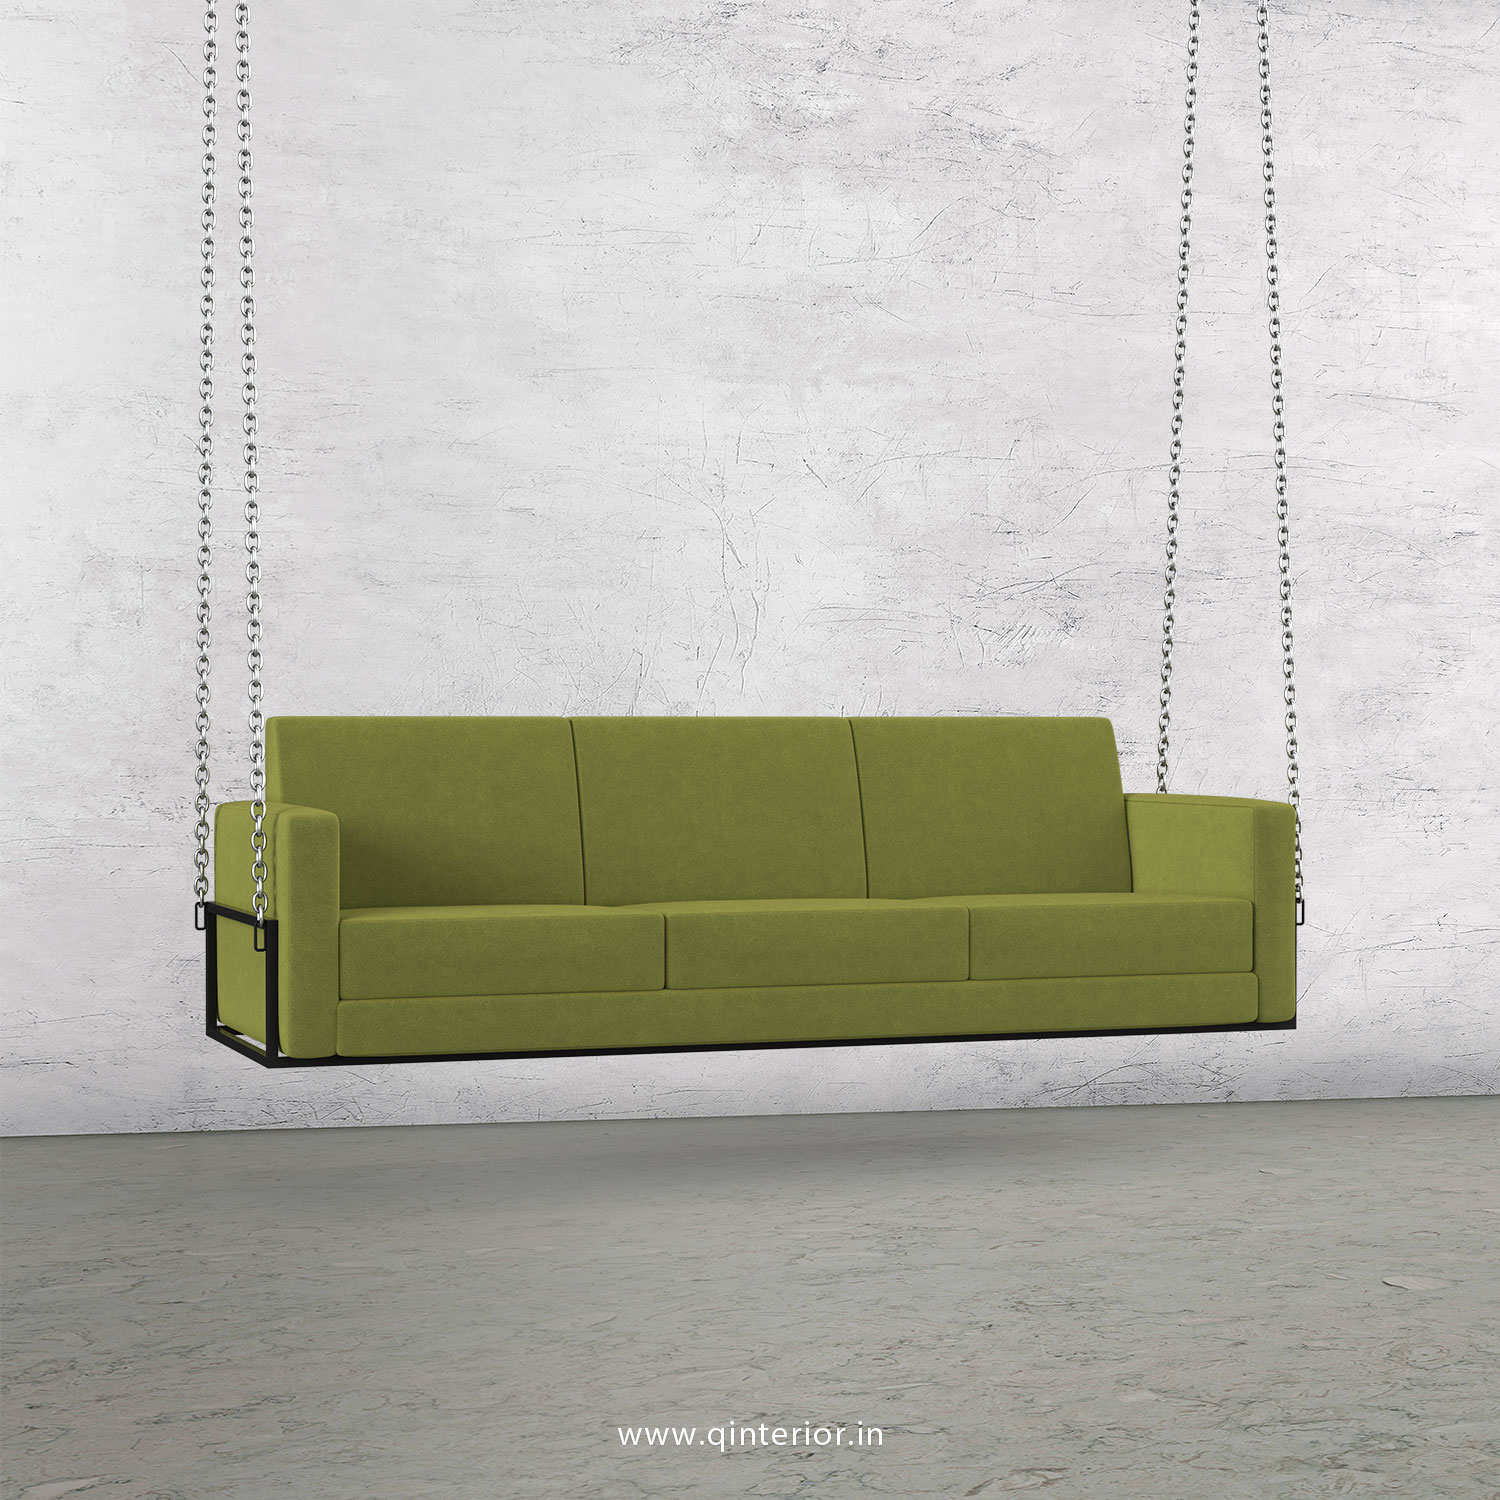 NIRVANA 3 Seater Swing Sofa in Velvet Fabric - SSF001 VL10